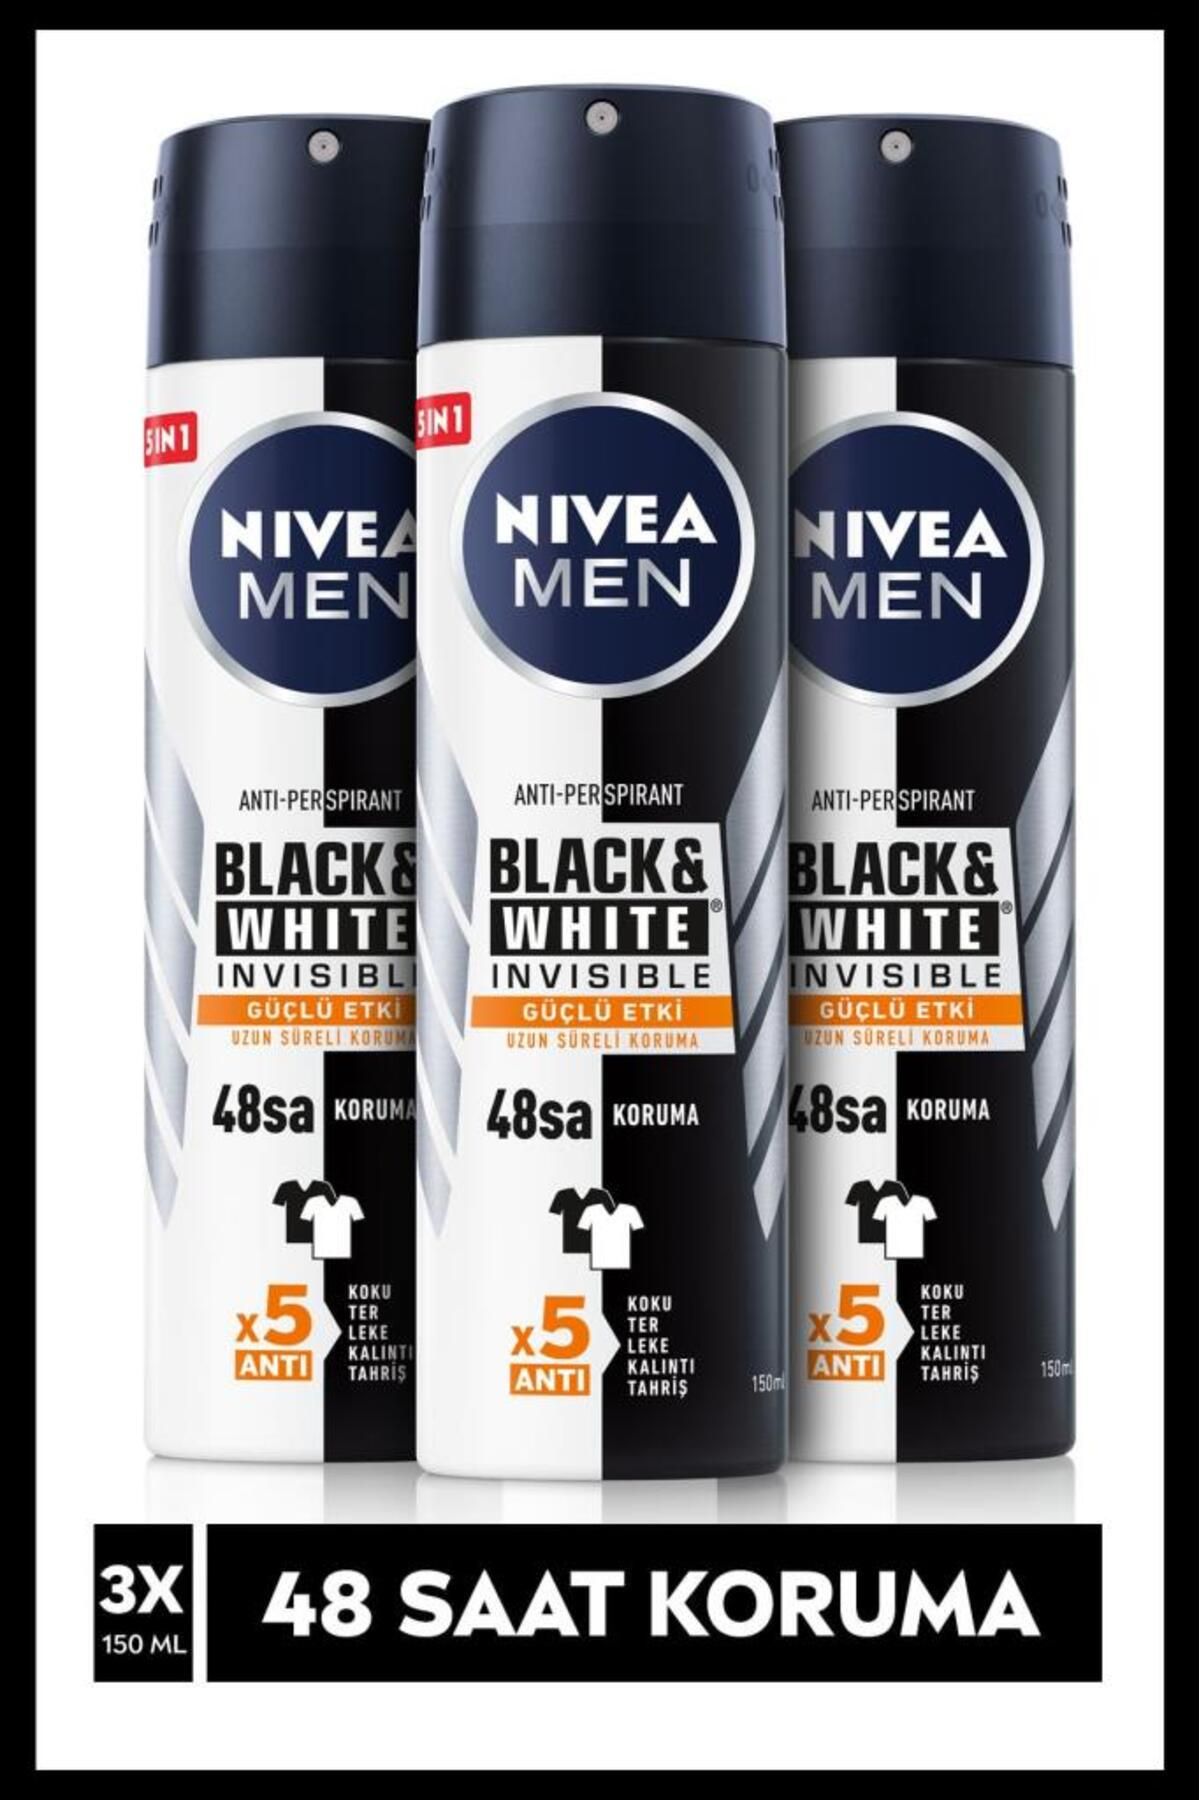 NIVEA Men Black & Whıte Invısıble Güçlü Etki Erkek Sprey Deodorant 150 ml X3